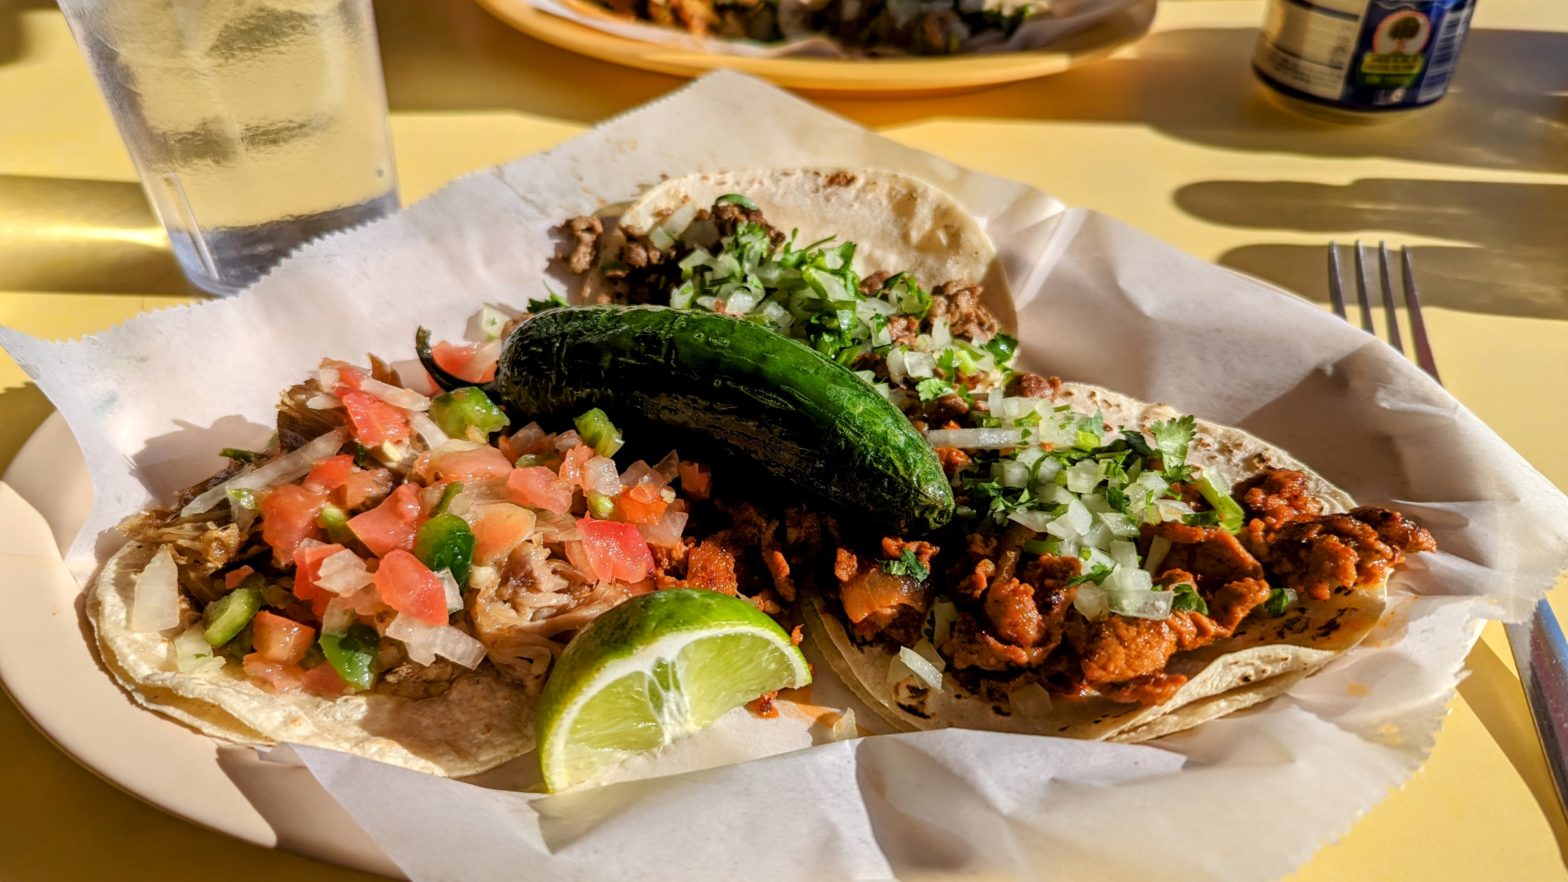 Get Tacos at Taqueria Ranch Alegre in Loveland, Colorado